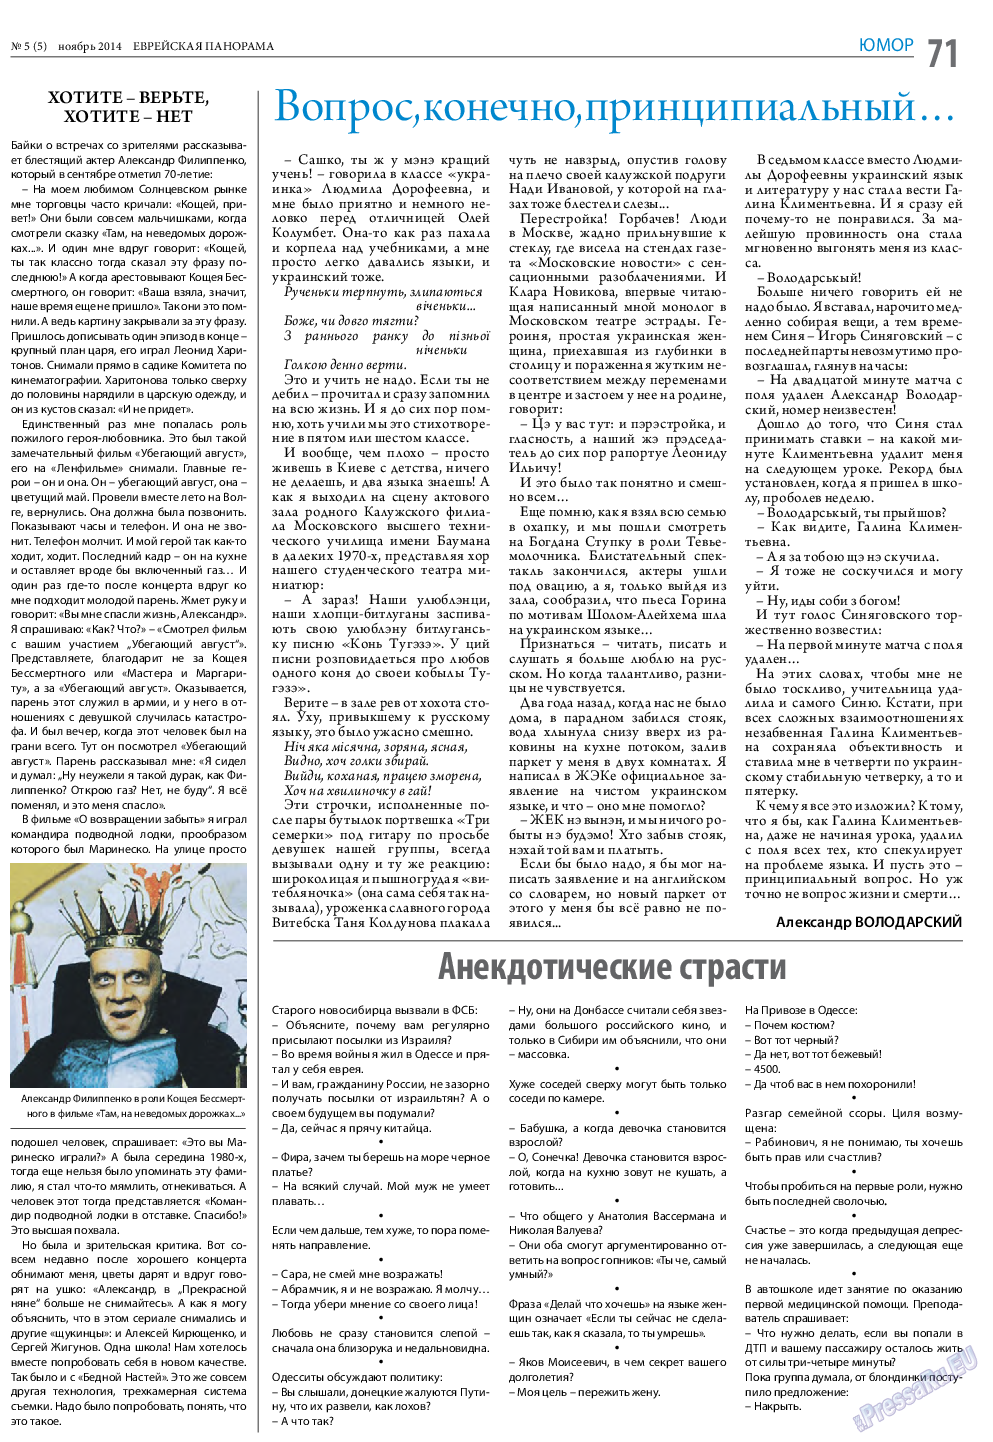 Еврейская панорама (газета). 2014 год, номер 5, стр. 71